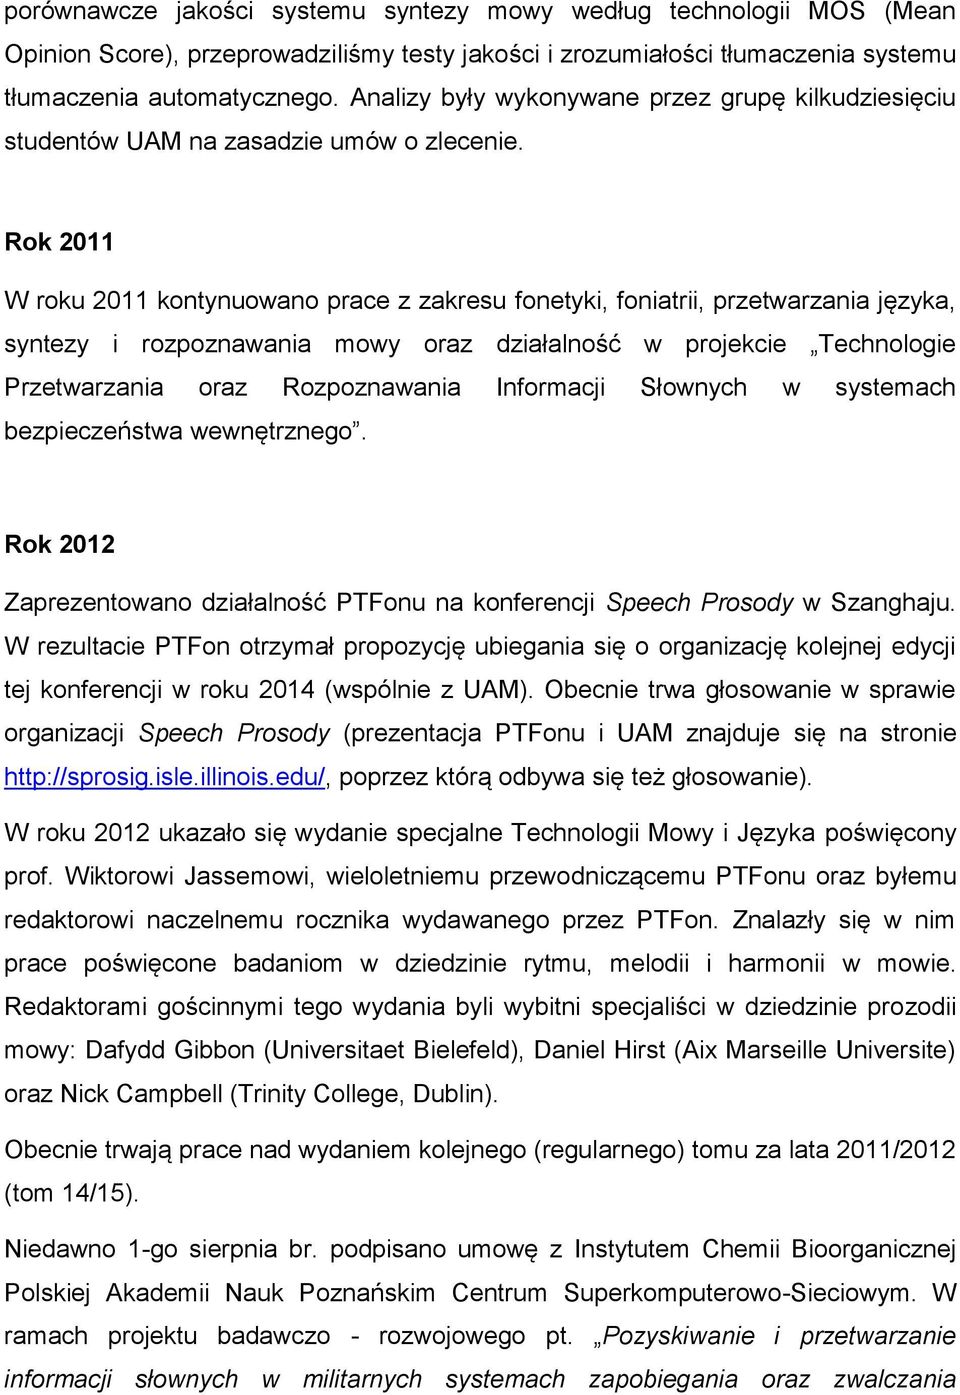 Rok 2011 W roku 2011 kontynuowano prace z zakresu fonetyki, foniatrii, przetwarzania języka, syntezy i rozpoznawania mowy oraz działalność w projekcie Technologie Przetwarzania oraz Rozpoznawania